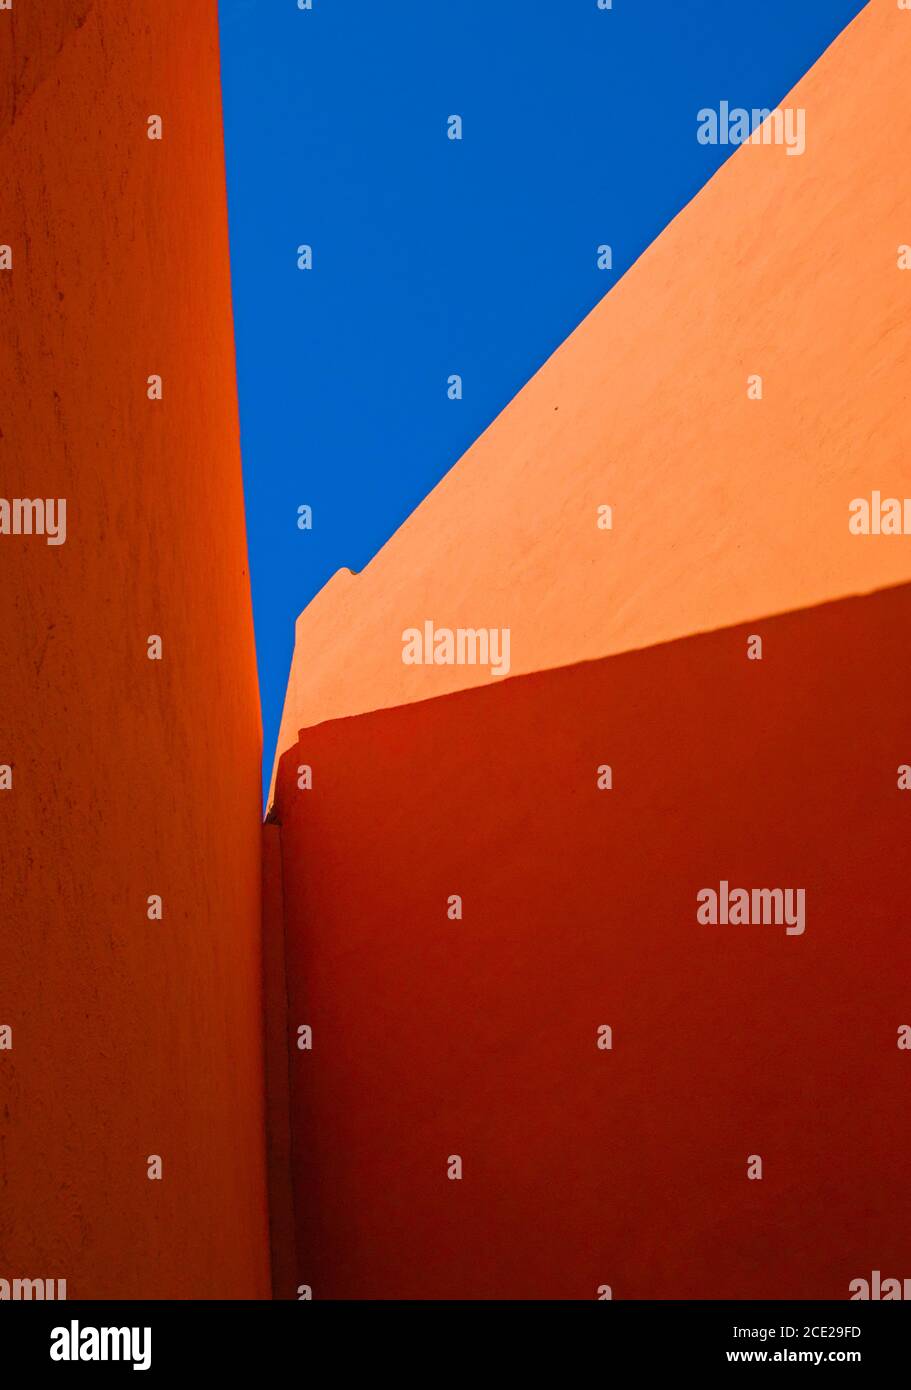 Architecture minimaliste murs orange formant des formes de base intéressantes Banque D'Images